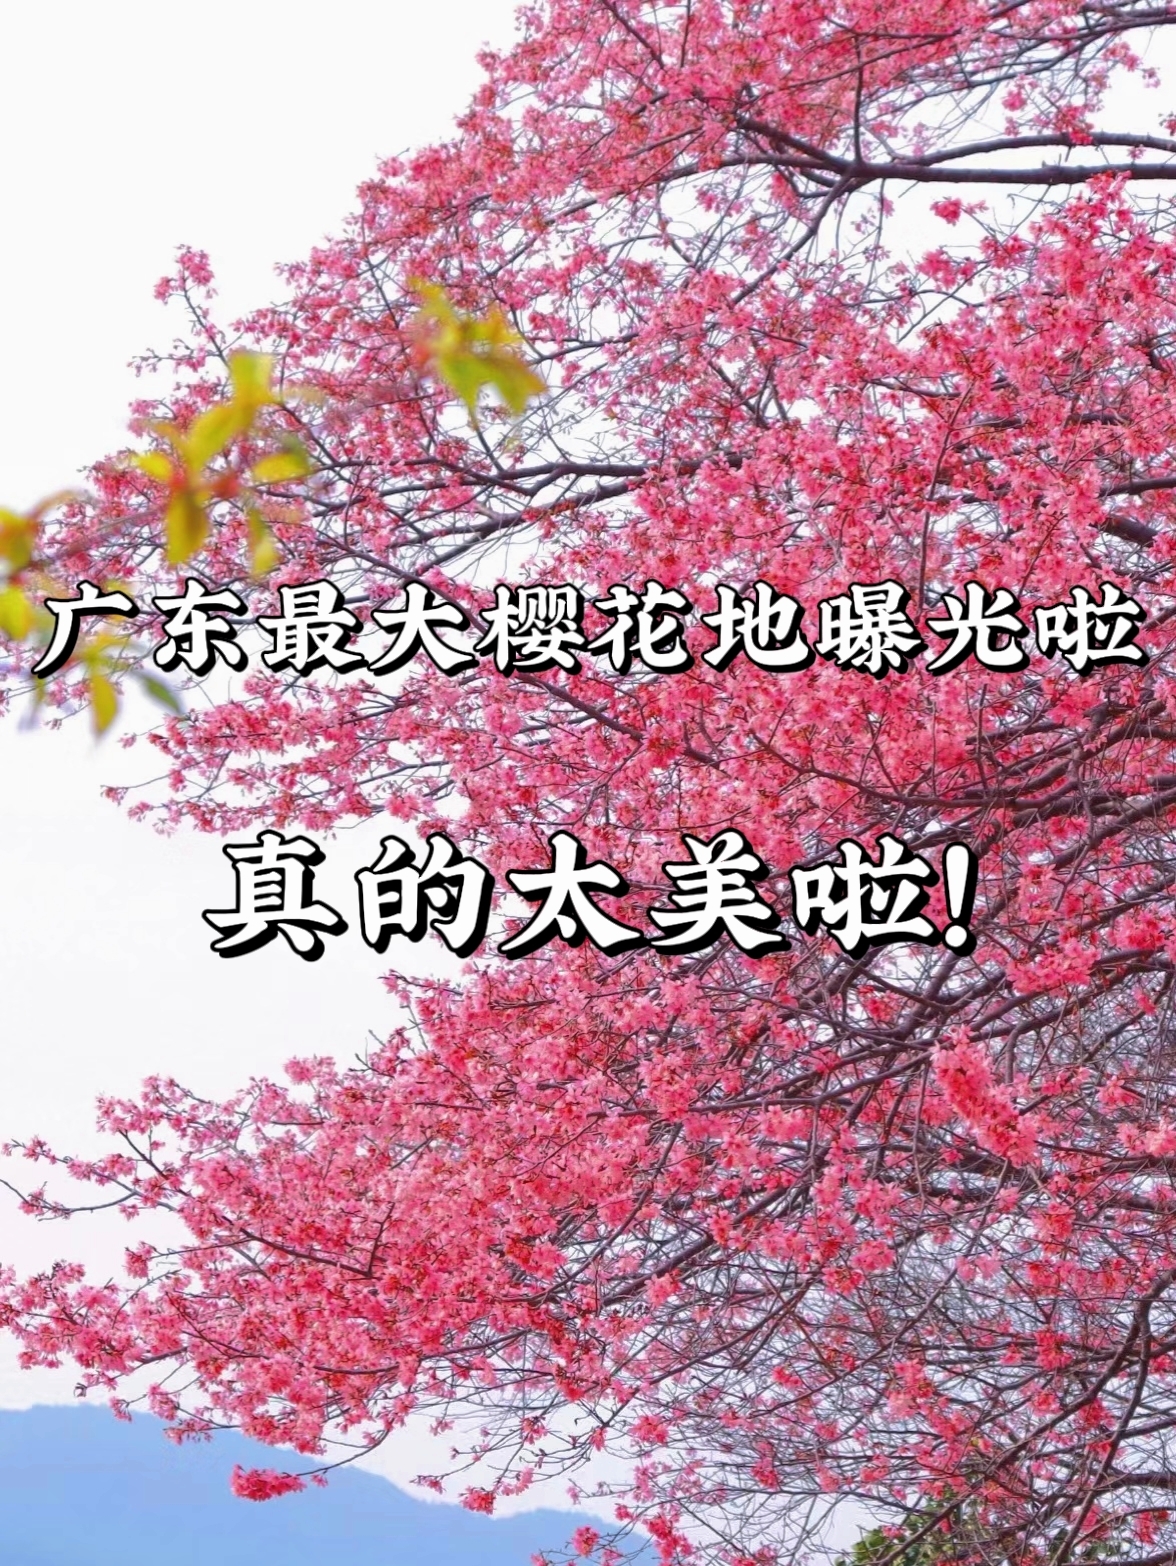 广东规模最大的樱花🌸观赏地，10万株樱海